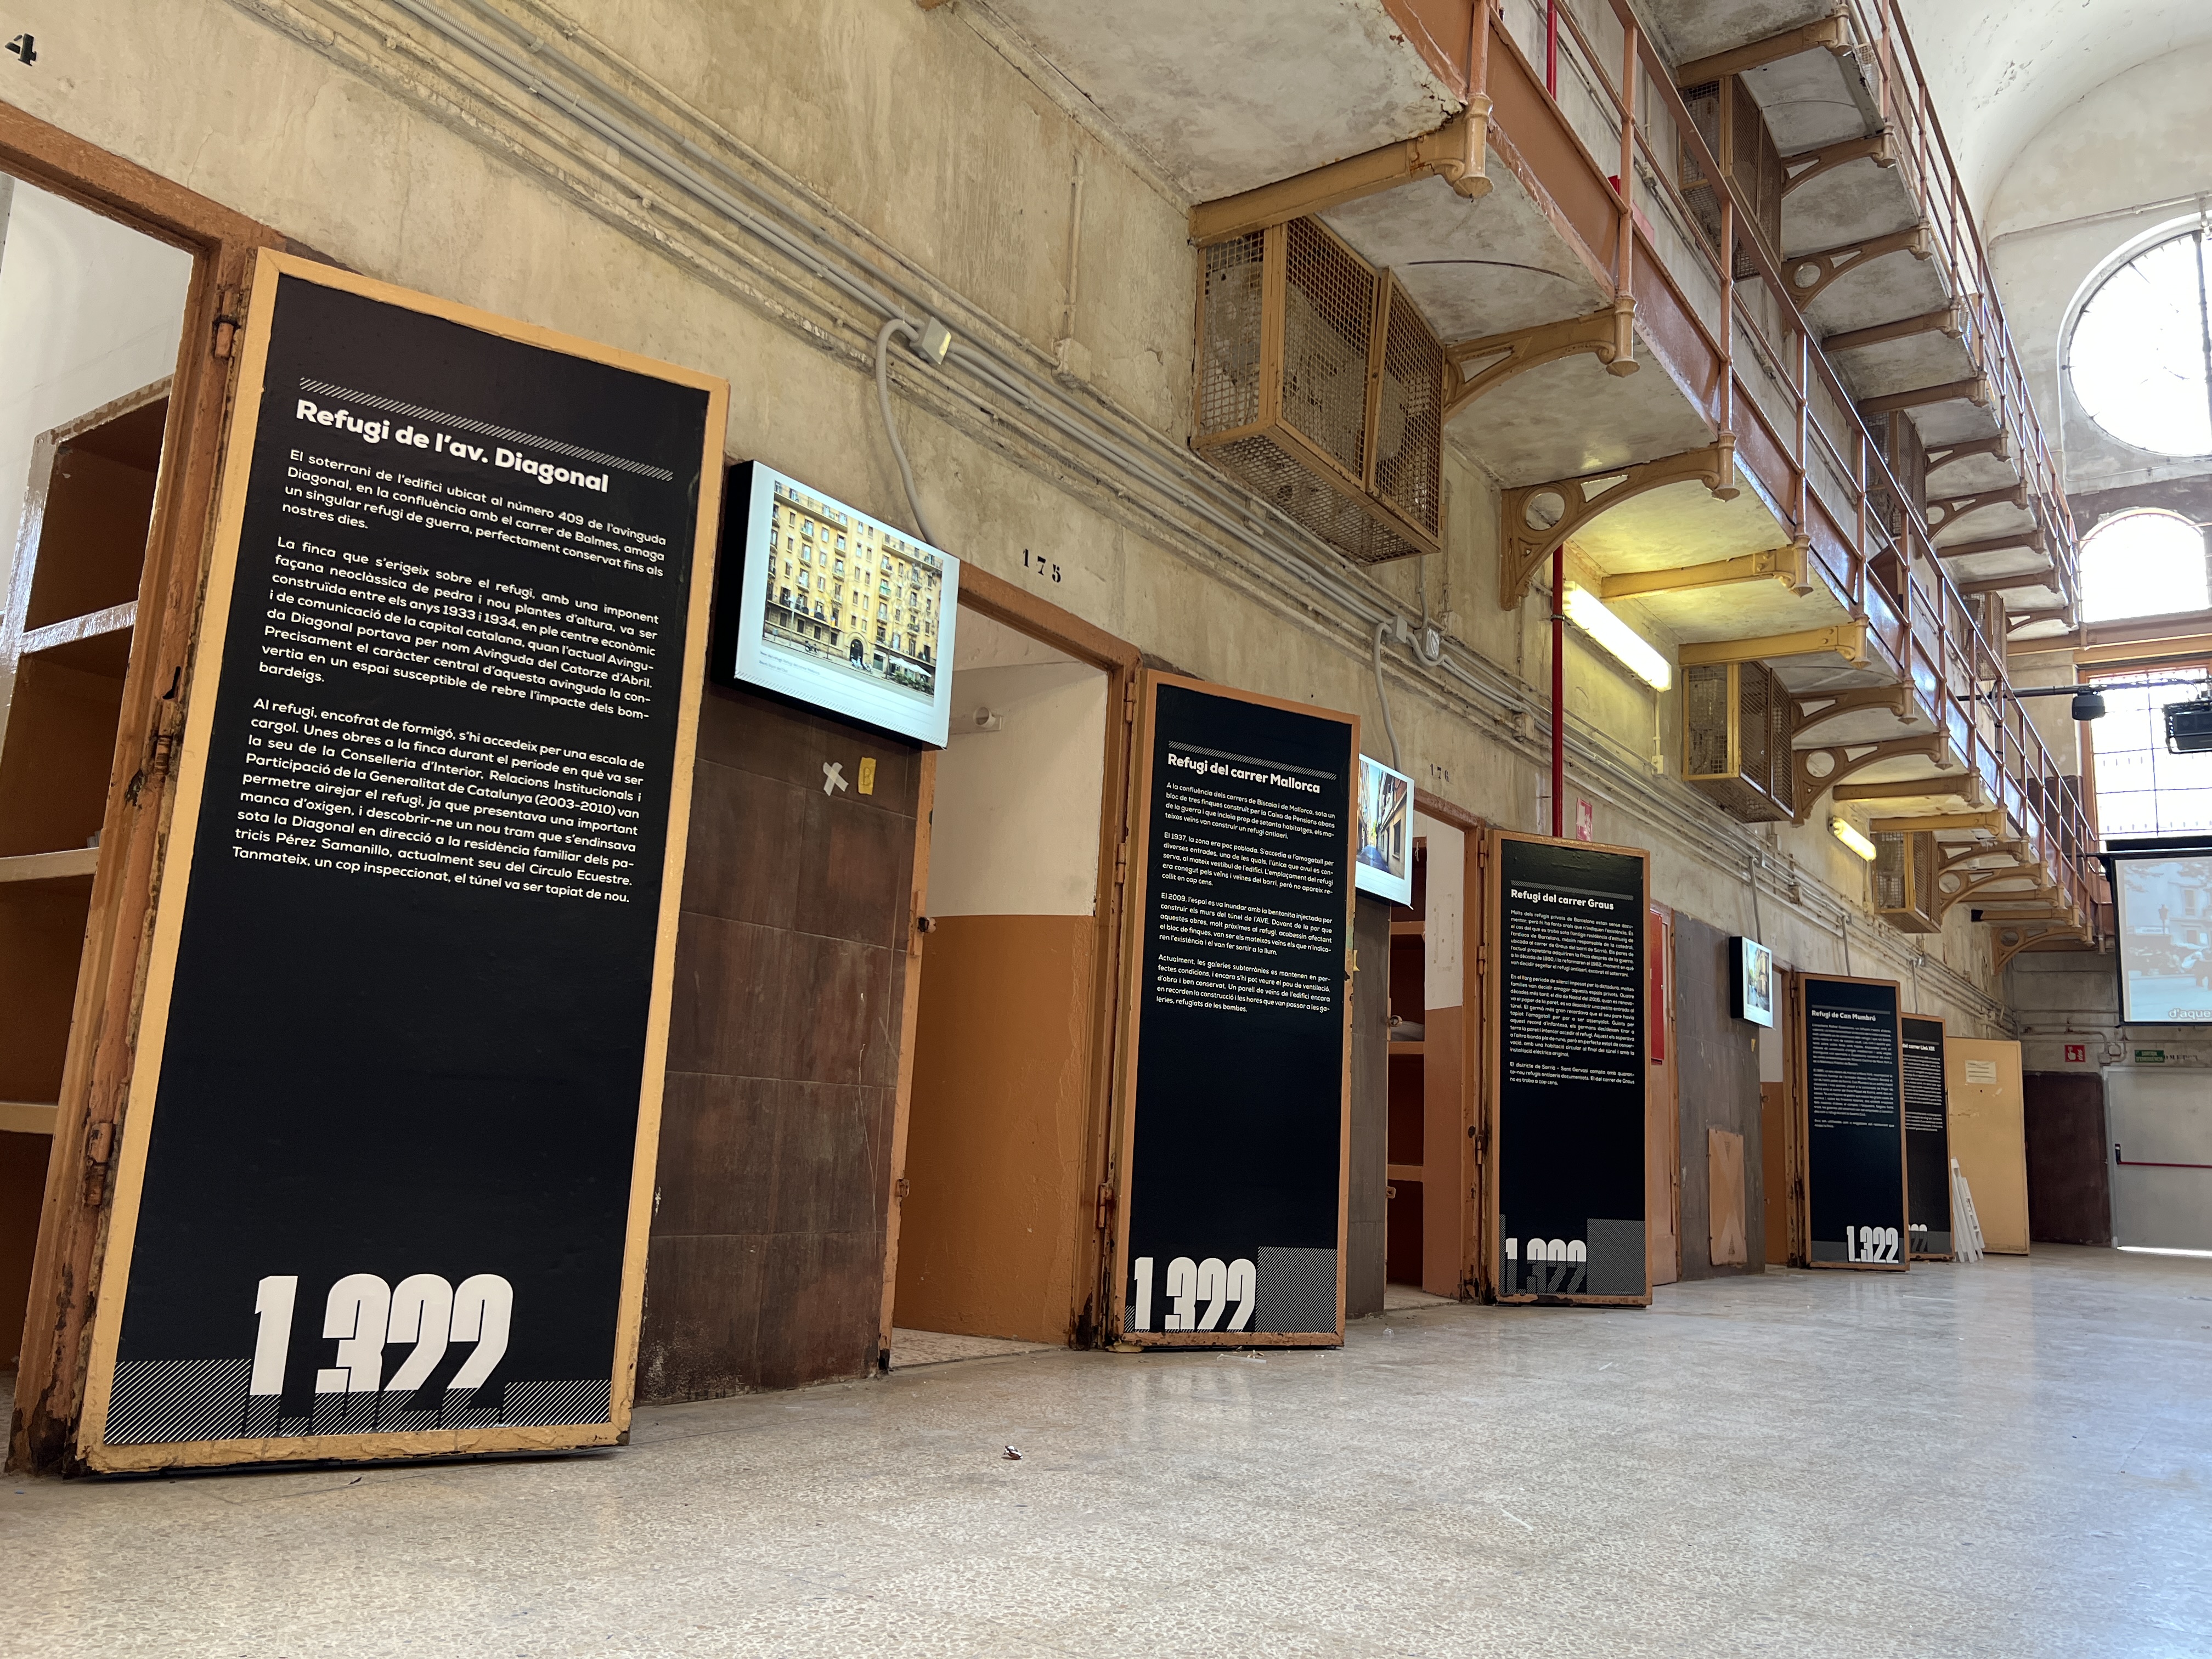 The 1,322 bomb shelters exhibition in Barcelona 'La Model' prison